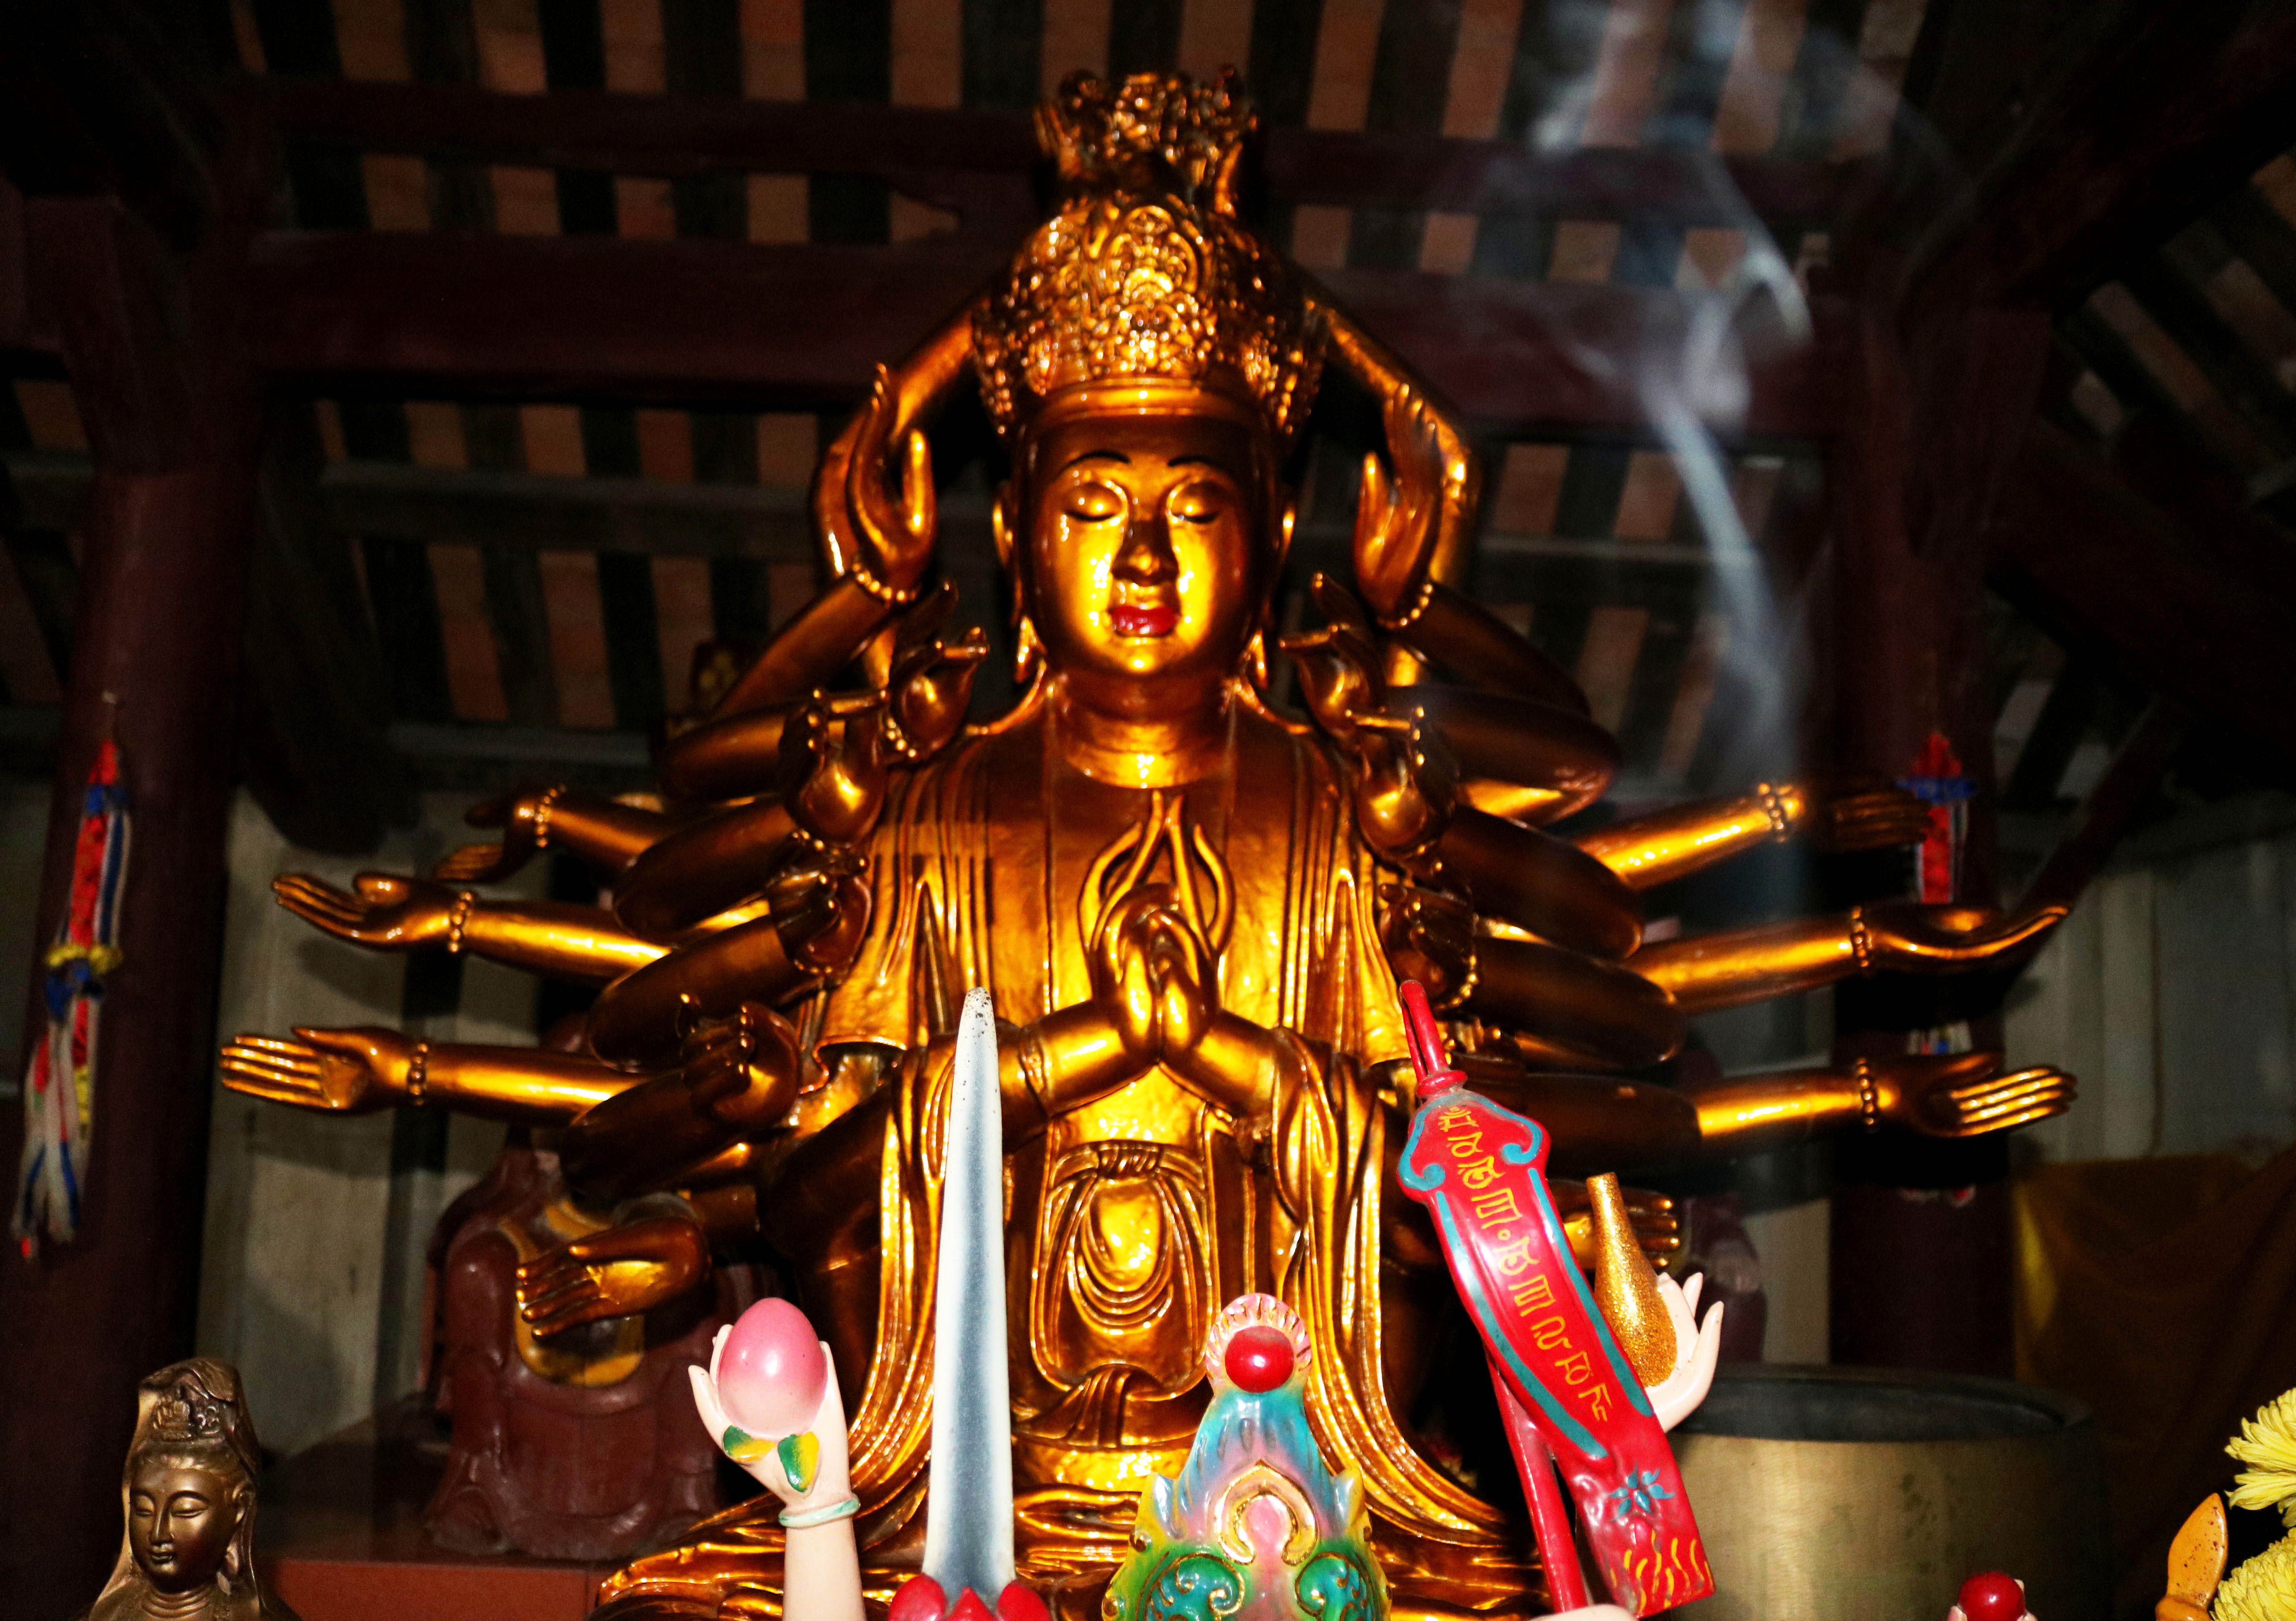 Tượng Phật Mẫu Chuẩn Đề chùa Phúc Mỹ  có nhiều điểm khác biệt  so với một số pho tượng được nói đến trong các ngôi chùa cổ trên cả nước. Có thể nói đây là pho tượng độc đáo, hiếm có, gần như là duy nhất ở Nghệ An.